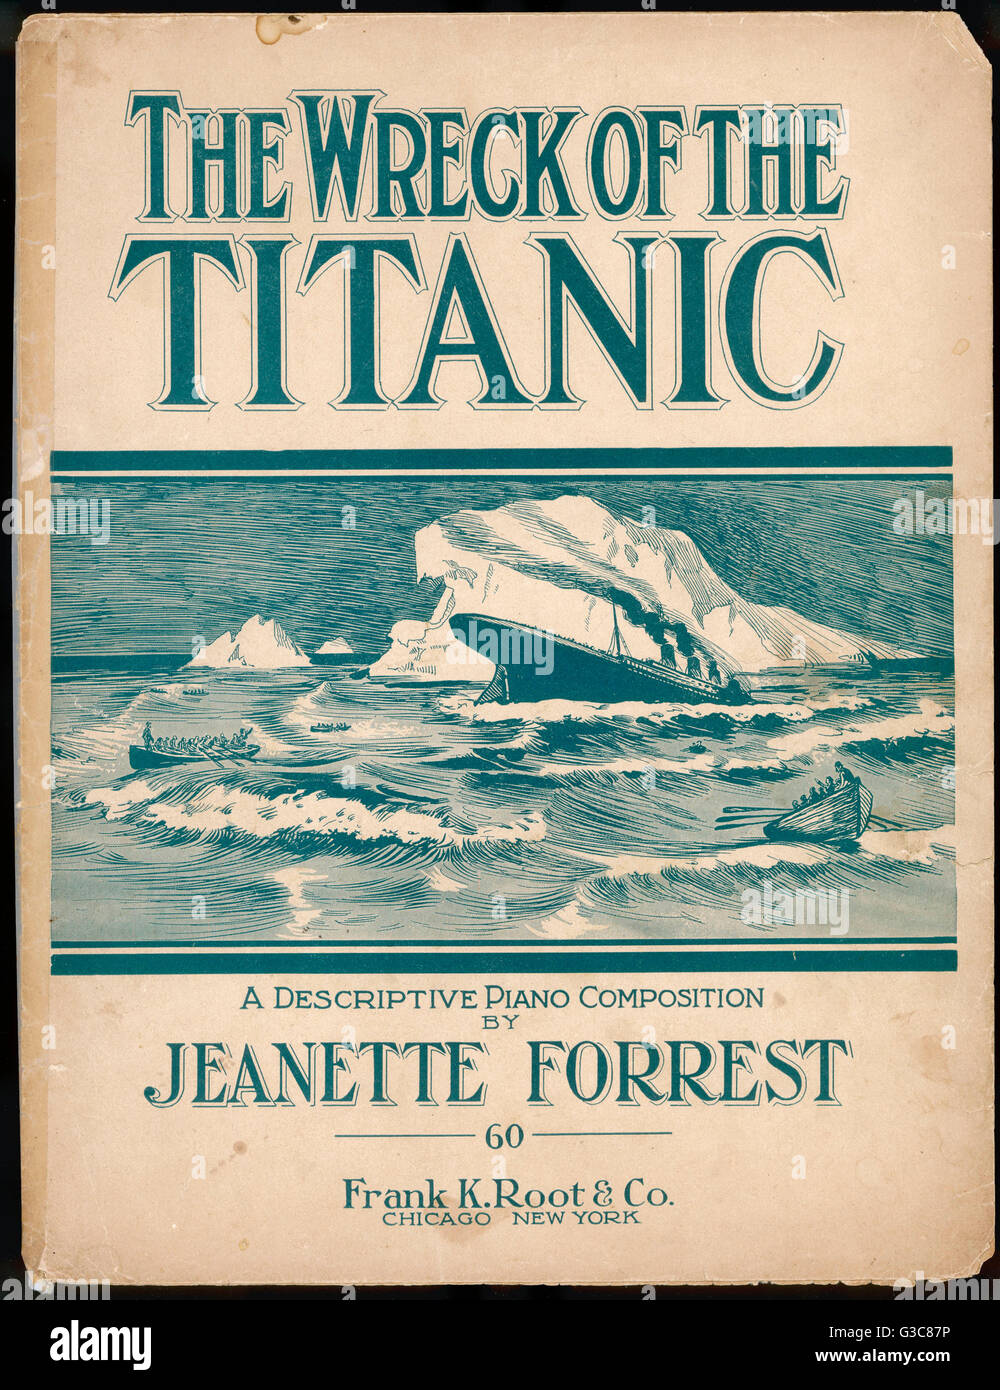 "Das Wrack der Titanic", Klavierstück von Jeanette Forrest - die Reise beginnt - jeder glücklich und sorglos - Pfeife klingt der Alarm - näher mein Gott - Schiff sinkt...     Datum: 1912 Stockfoto